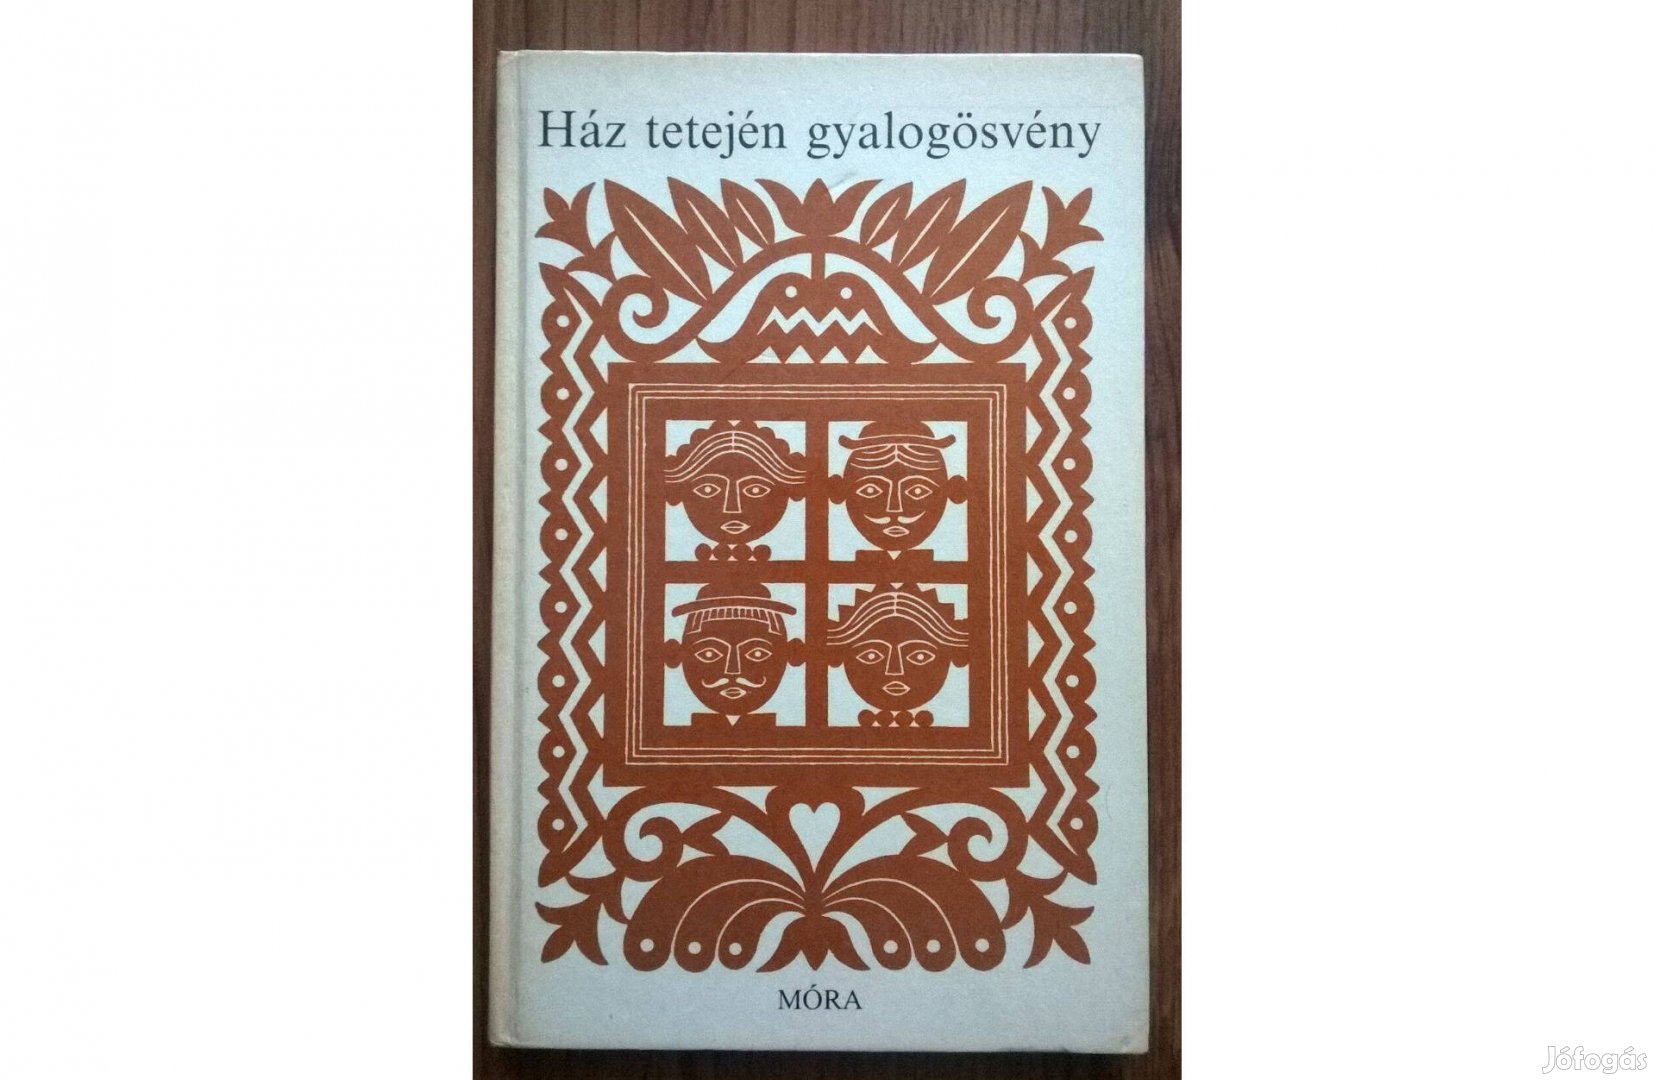 Mándoki László: Ház tetején gyalogösvény (1987)